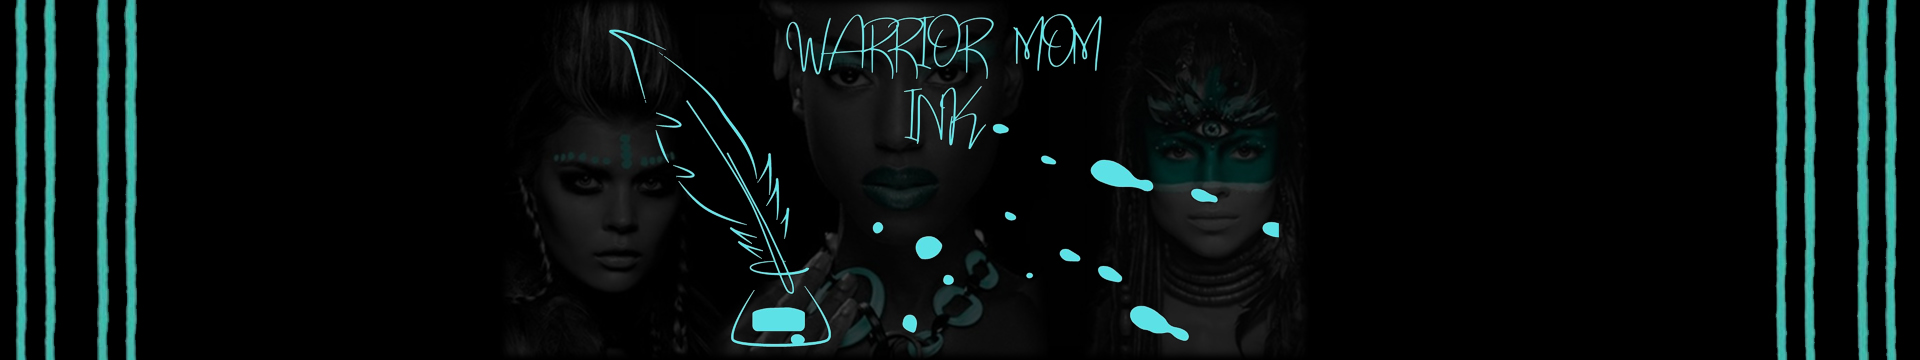 warrior-mom-ink-header.jpg